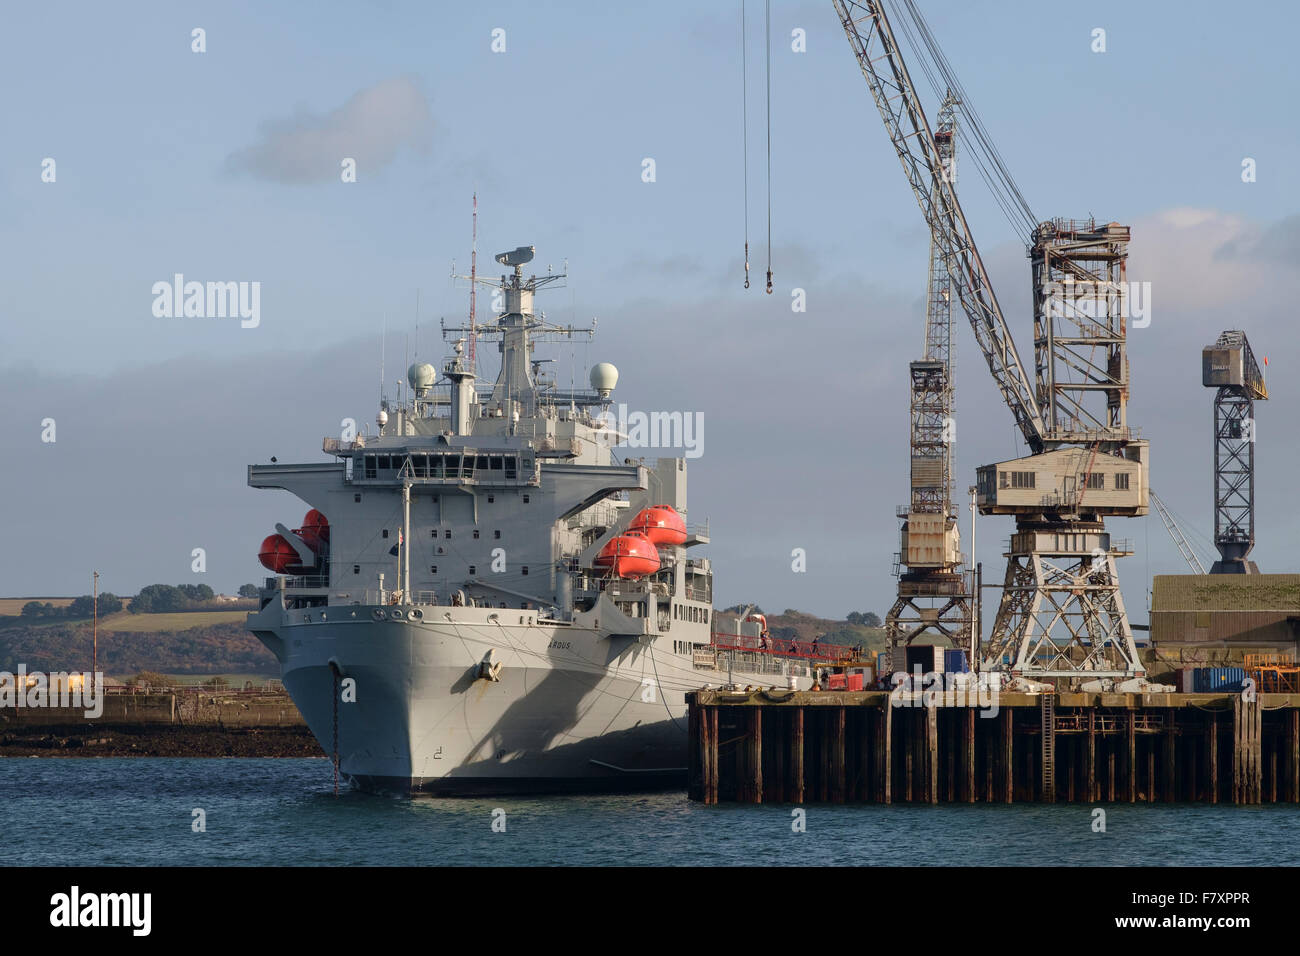 RFA Argus en Falmouth muelles con marineros de abandonar el buque Foto de stock